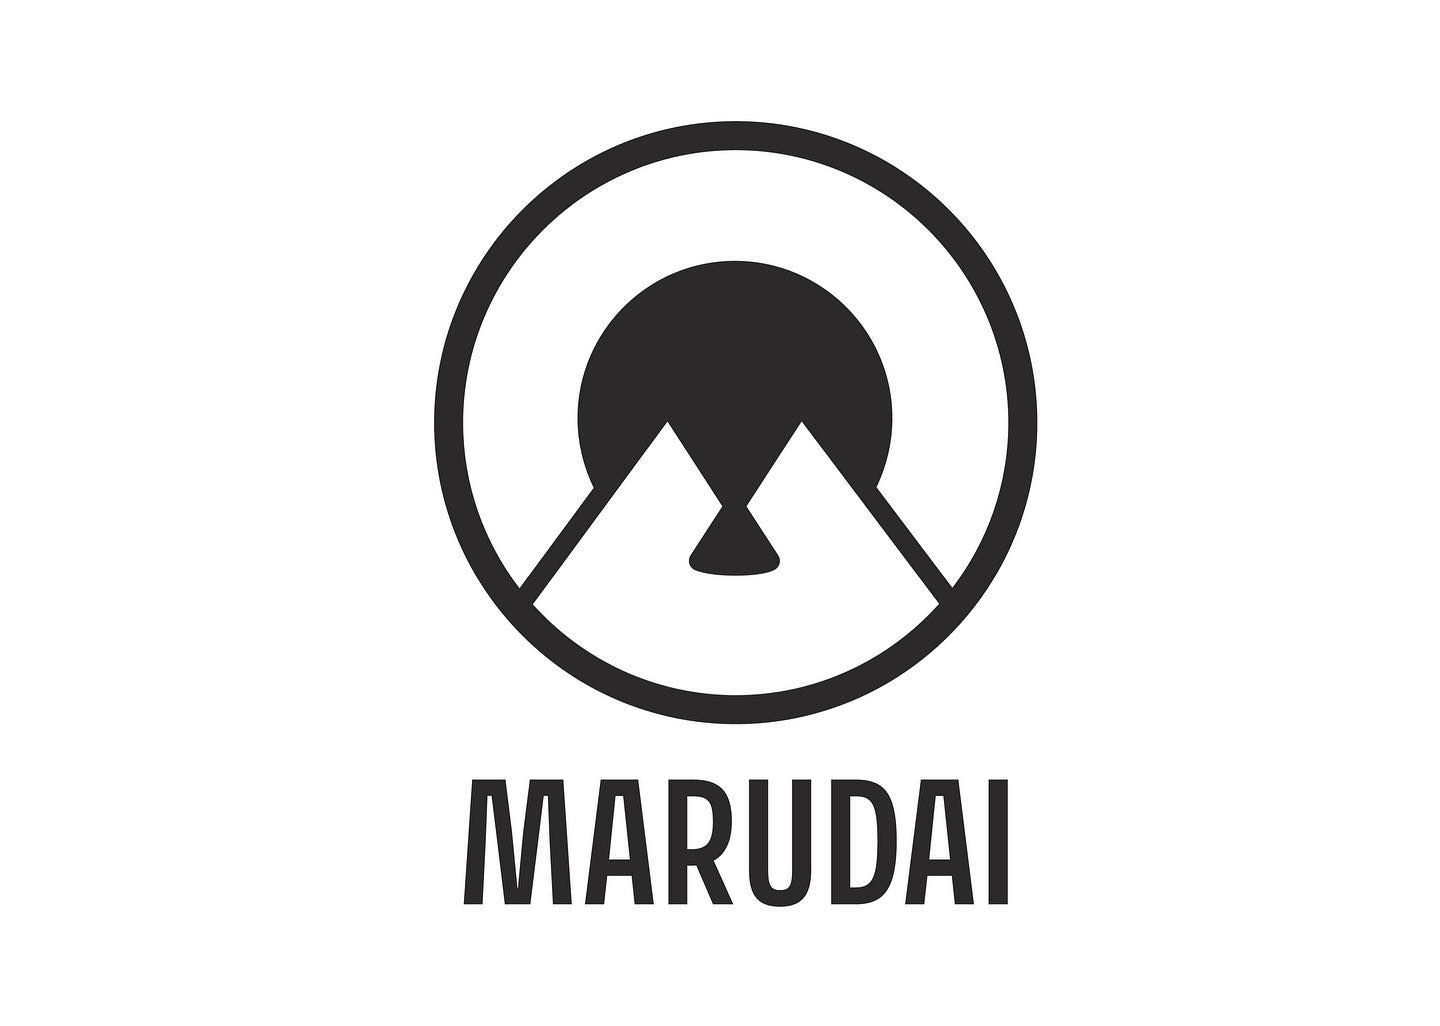 出店者紹介！・@marudai.garage ・MARUDAIは、2021年7月に走り出したガレージブランド。 本社は東京都練馬区、工場は群馬県伊勢崎に構え、主力製品は、ロケットストーブになっています。 今後、ロケットストーブをはじめキッチンテーブルや焚き火台、ランタンポールなどMARUDAの得意とする溶接技術を生かしたキャンプギアでアウトドア業界をさらに盛り上げてくれることでしょう。#projectnowhere#project#nowhere#沼尻高原ロッジ#沼尻#ガレージブランド#キャンプギア